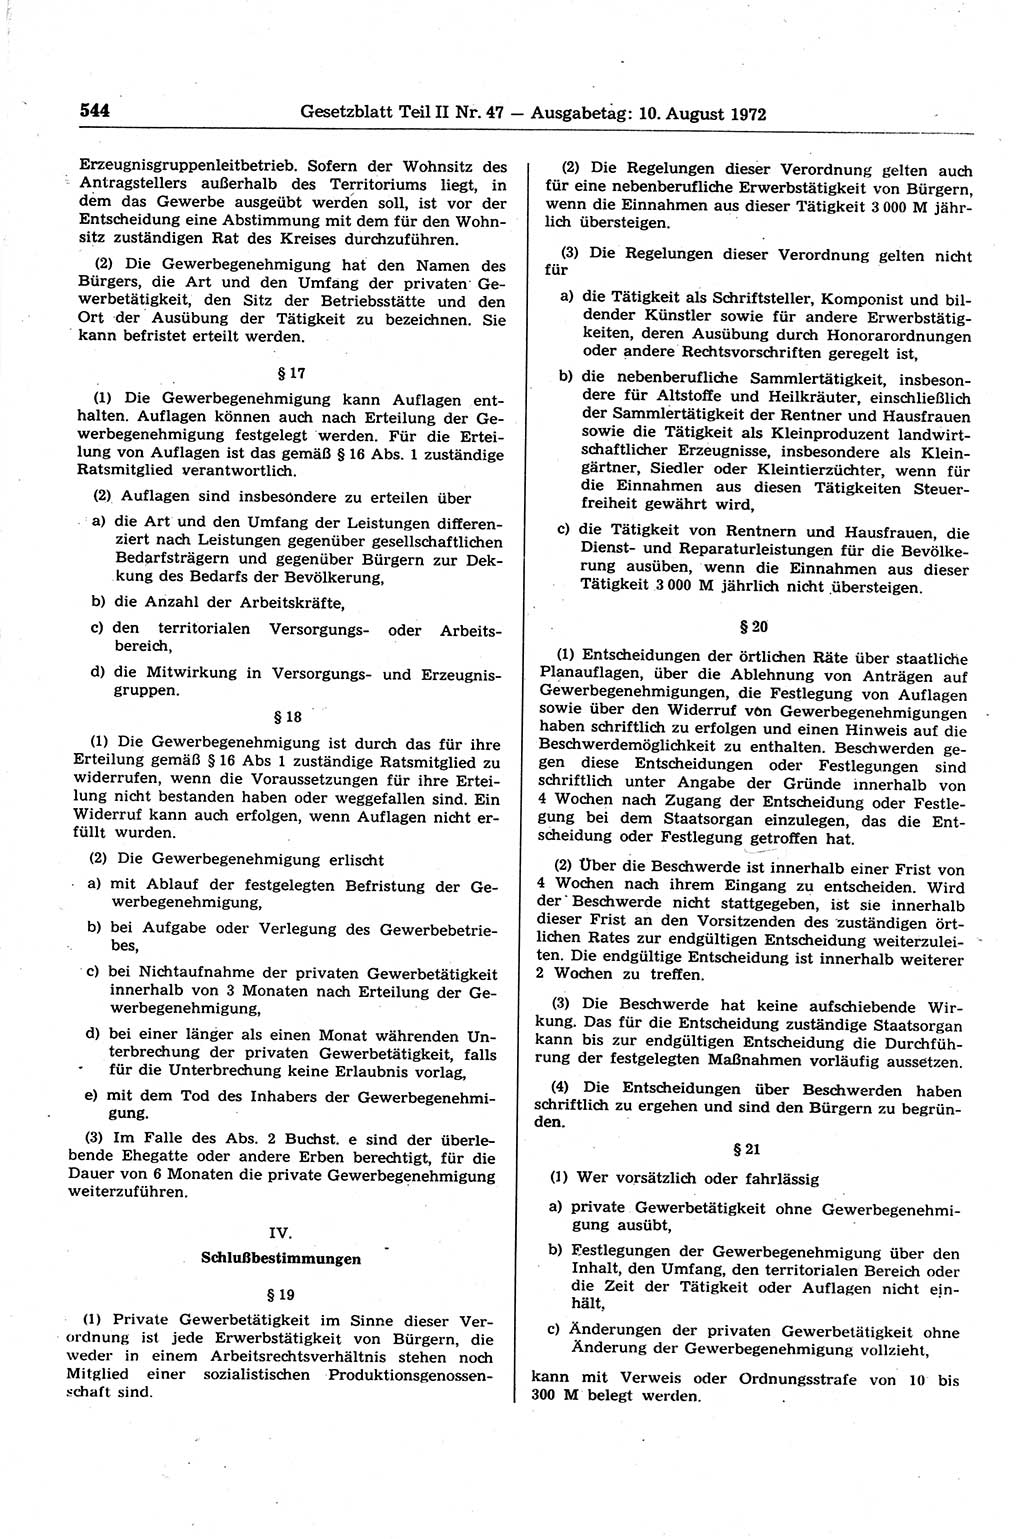 Gesetzblatt (GBl.) der Deutschen Demokratischen Republik (DDR) Teil ⅠⅠ 1972, Seite 544 (GBl. DDR ⅠⅠ 1972, S. 544)